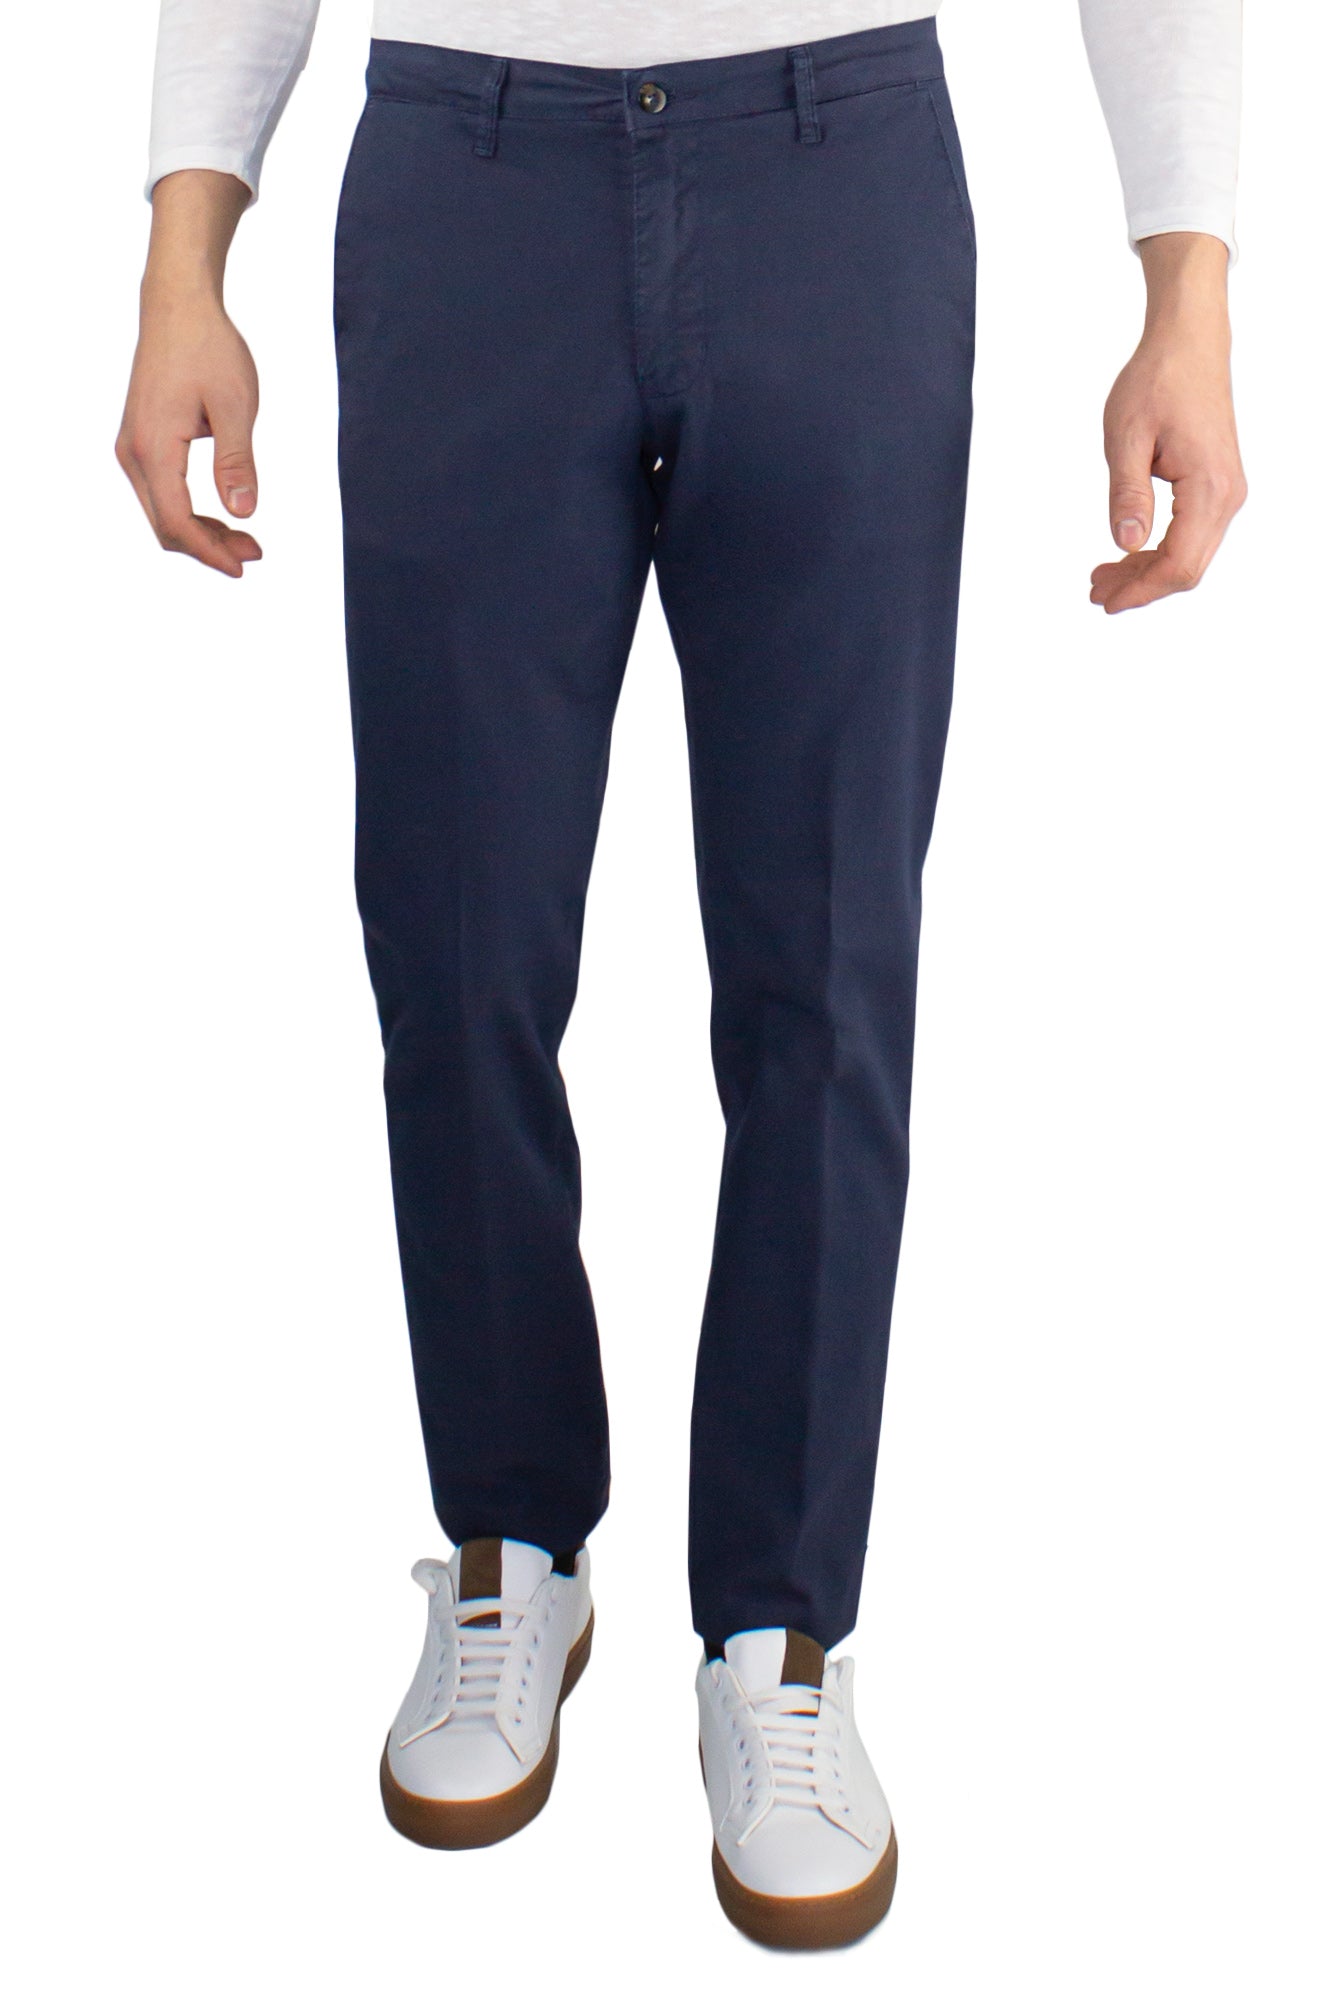 Pantalone chino in cotone stretch armatura